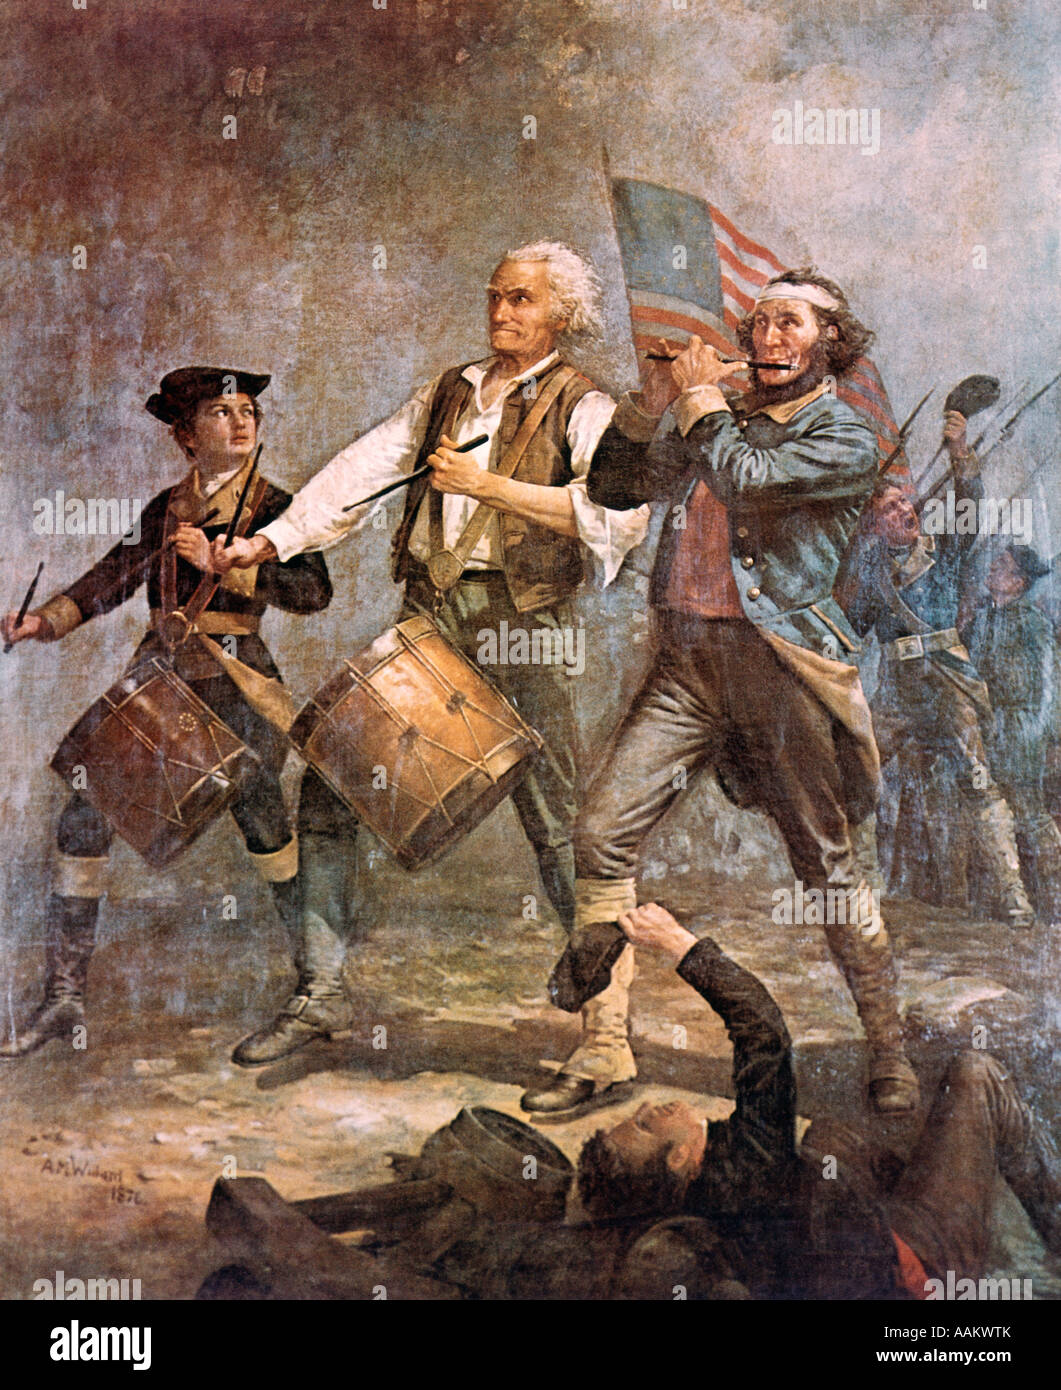 SPIRIT OF 76 PAR ARCHIBALD M. WILLARD RÉVOLUTION AMÉRICAINE WAR 1776 TROIS HOMMES DRAPEAU PATRIOTE FIFE TAMBOUR MARCHING MUSIC Banque D'Images